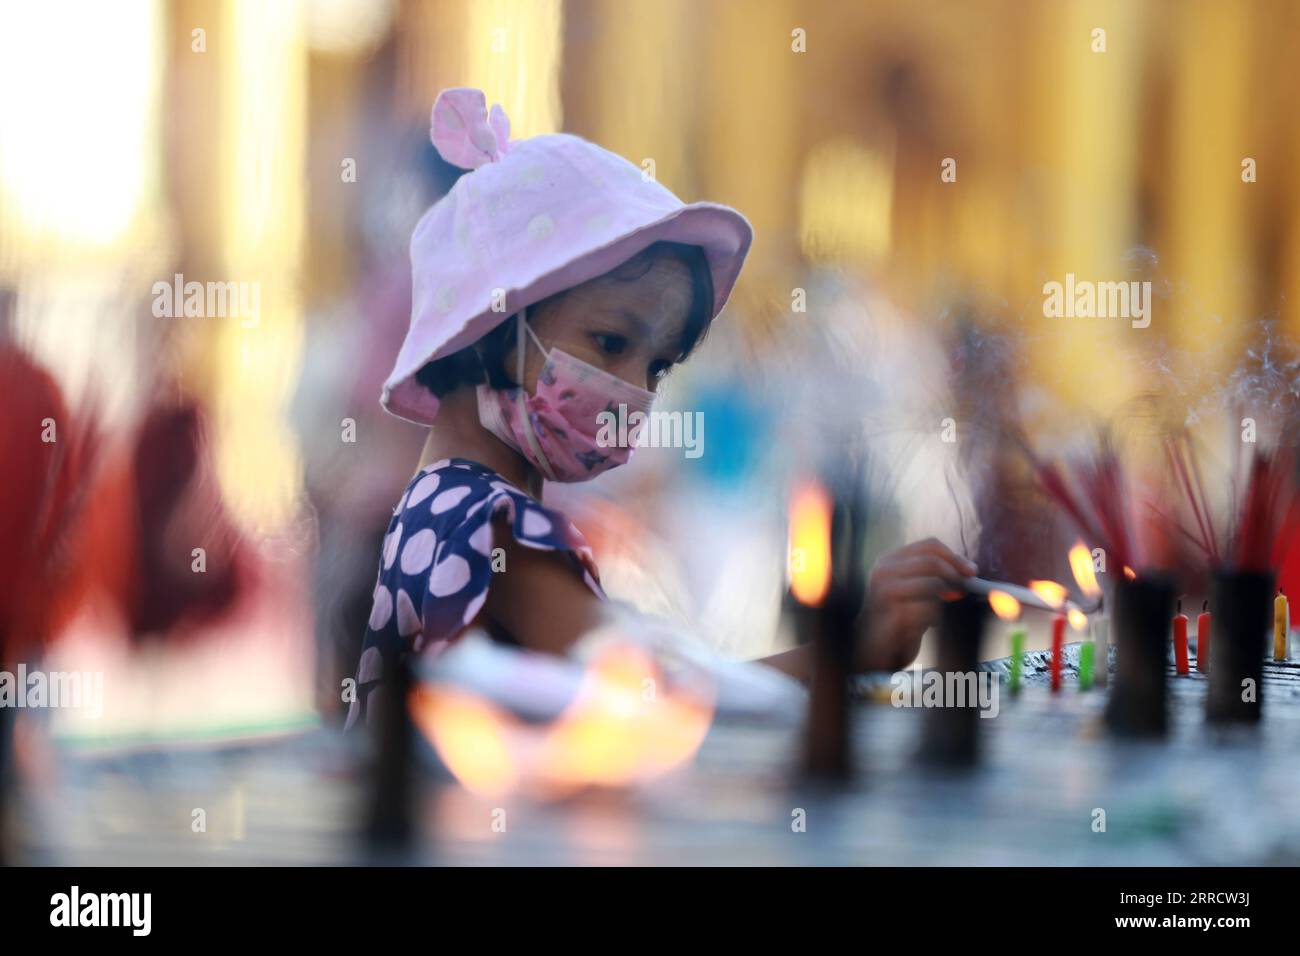 211118 -- YANGON, 18. November 2021 -- Ein Kind zündet Kerzen während des traditionellen Tazaungdaing Festivals in der Shwedagon-Pagode in Yangon, Myanmar, 18. November 2021 an. Das Tazaungdaing Festival, auch als Festival der Lichter bekannt, fällt in den achten Monat des traditionellen Myanmar-Kalenders. Es wird als Nationalfeiertag in Myanmar gefeiert. MYANMAR-YANGON-TRADITIONAL TAZAUNGDAING FESTIVAL UxAung PUBLICATIONxNOTxINxCHN Stockfoto